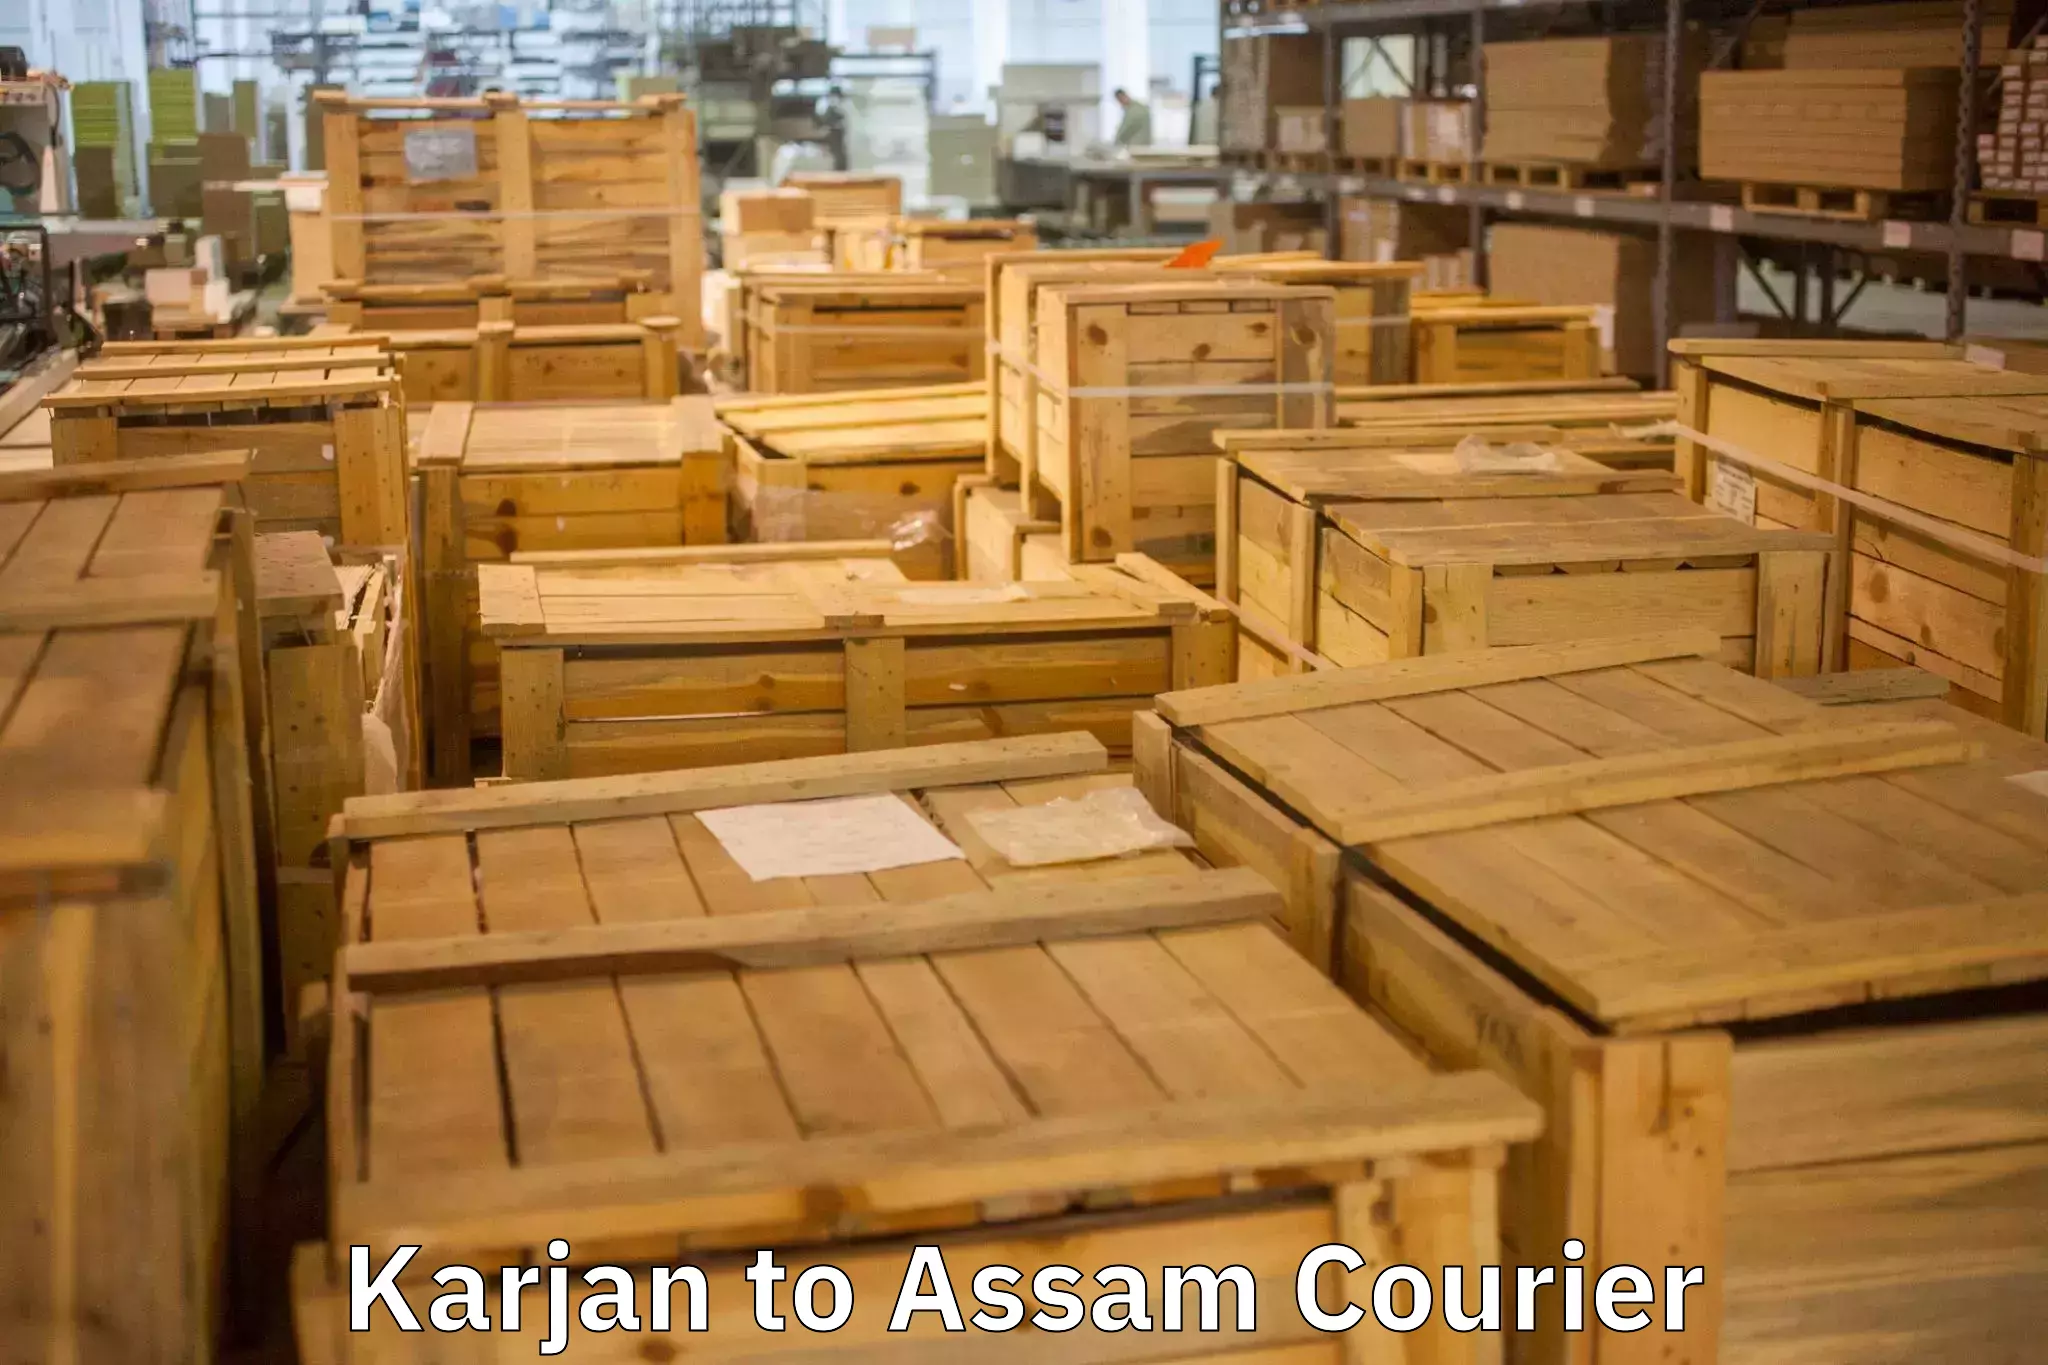 Furniture transport specialists Karjan to Kabuganj